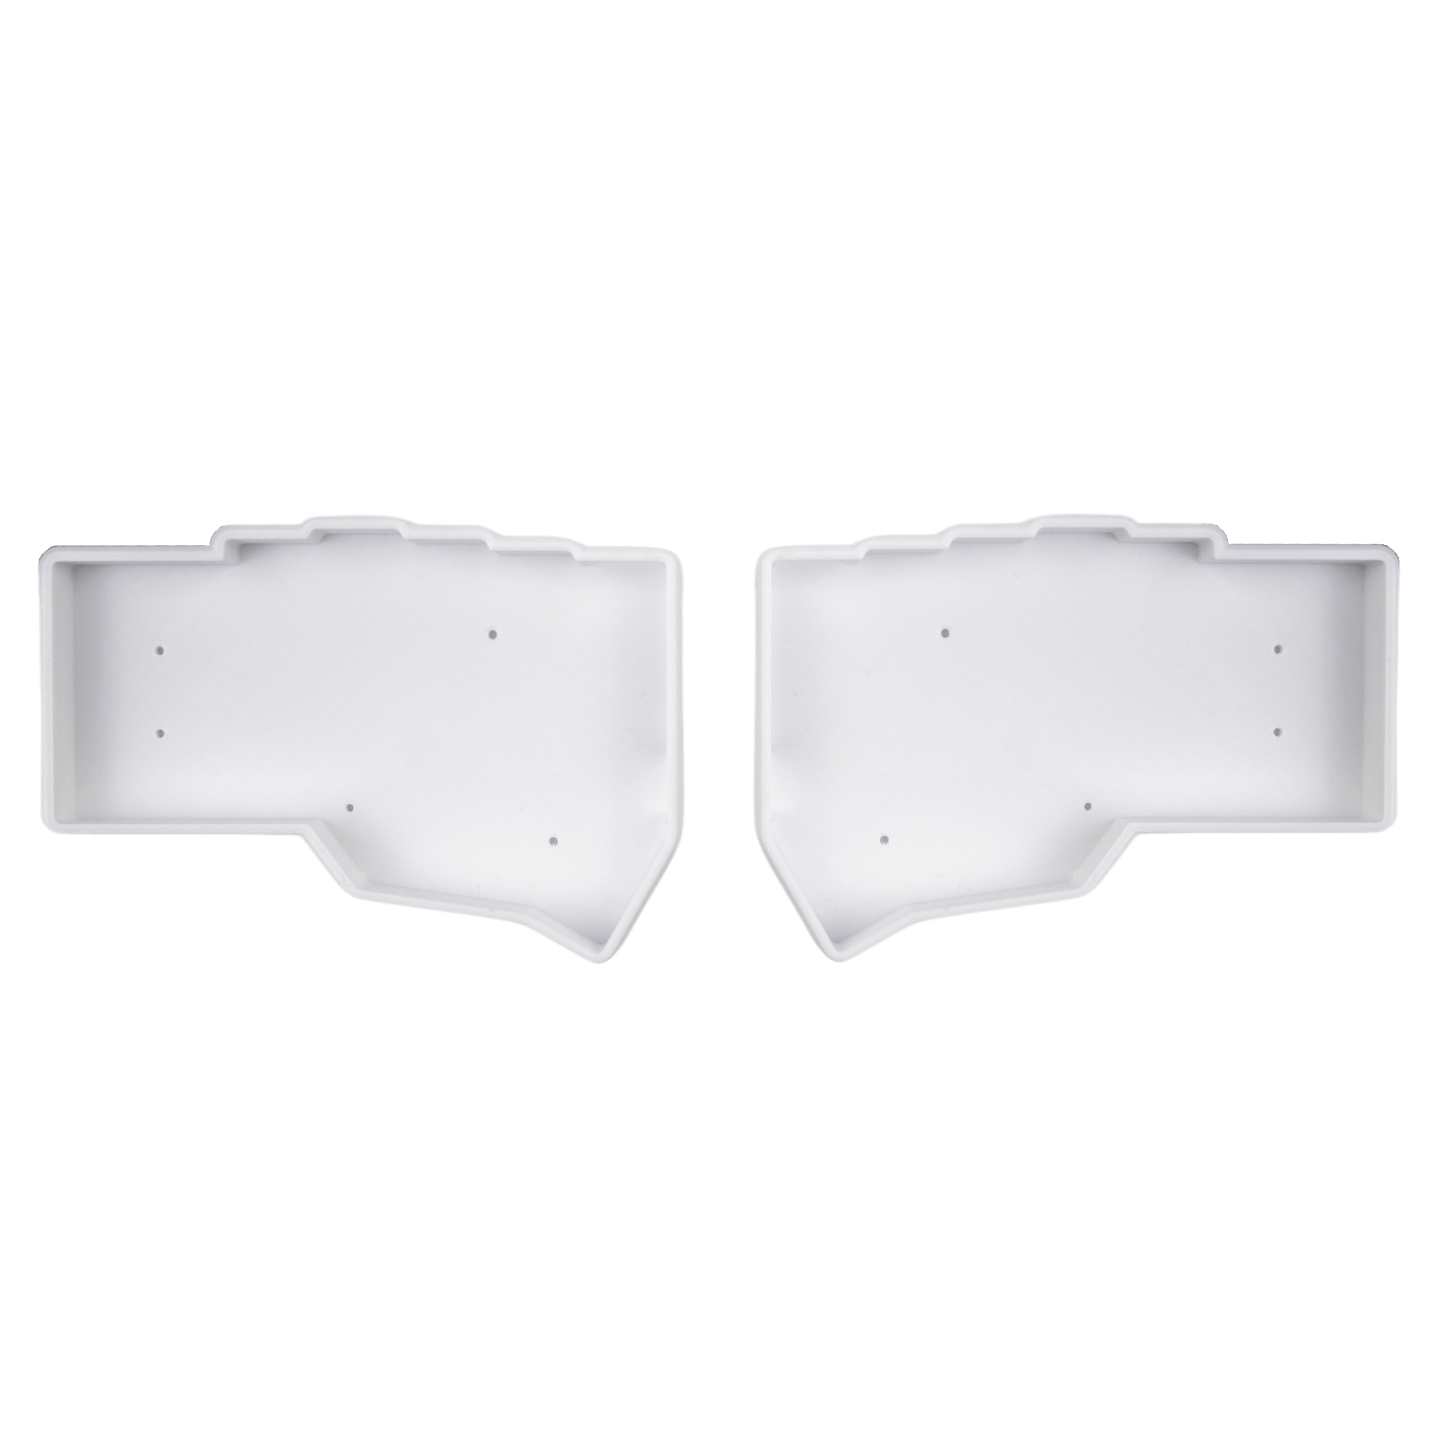 3D Printed Helidox Corne Case White